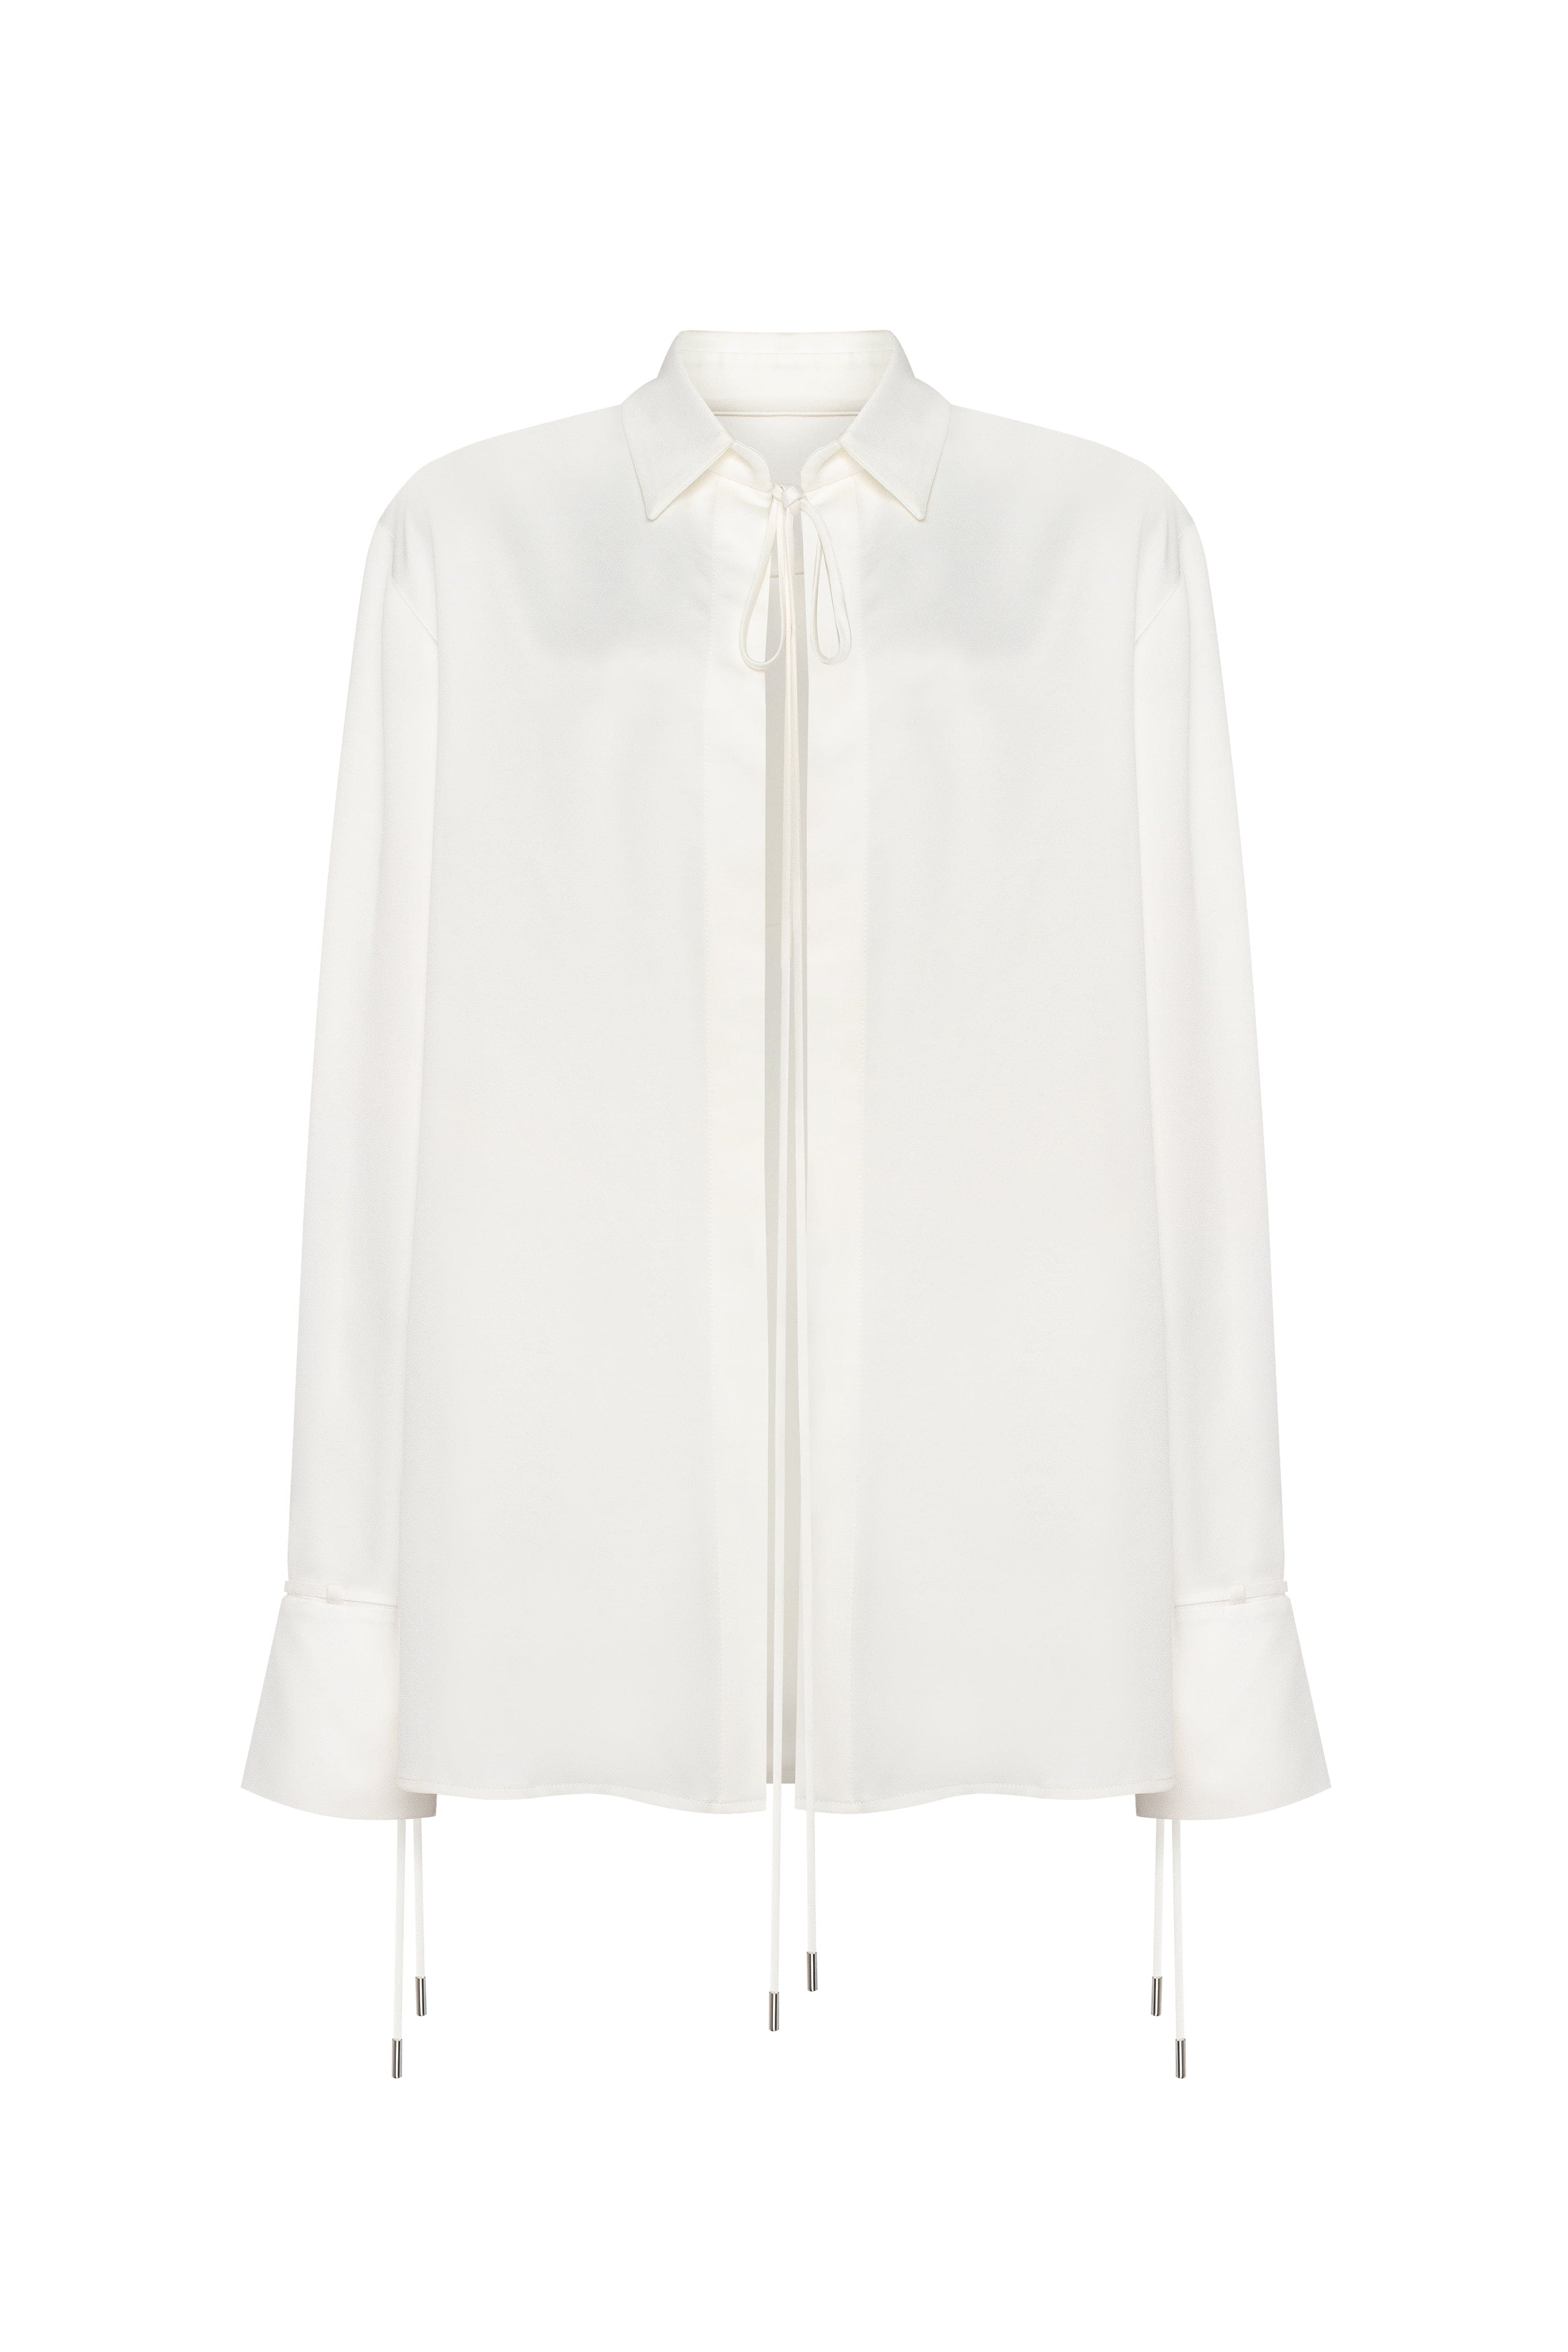 Elegant 3-piece set with white silk blouse, white mini skirt, and black crepe maxi skirt, Xo Xo